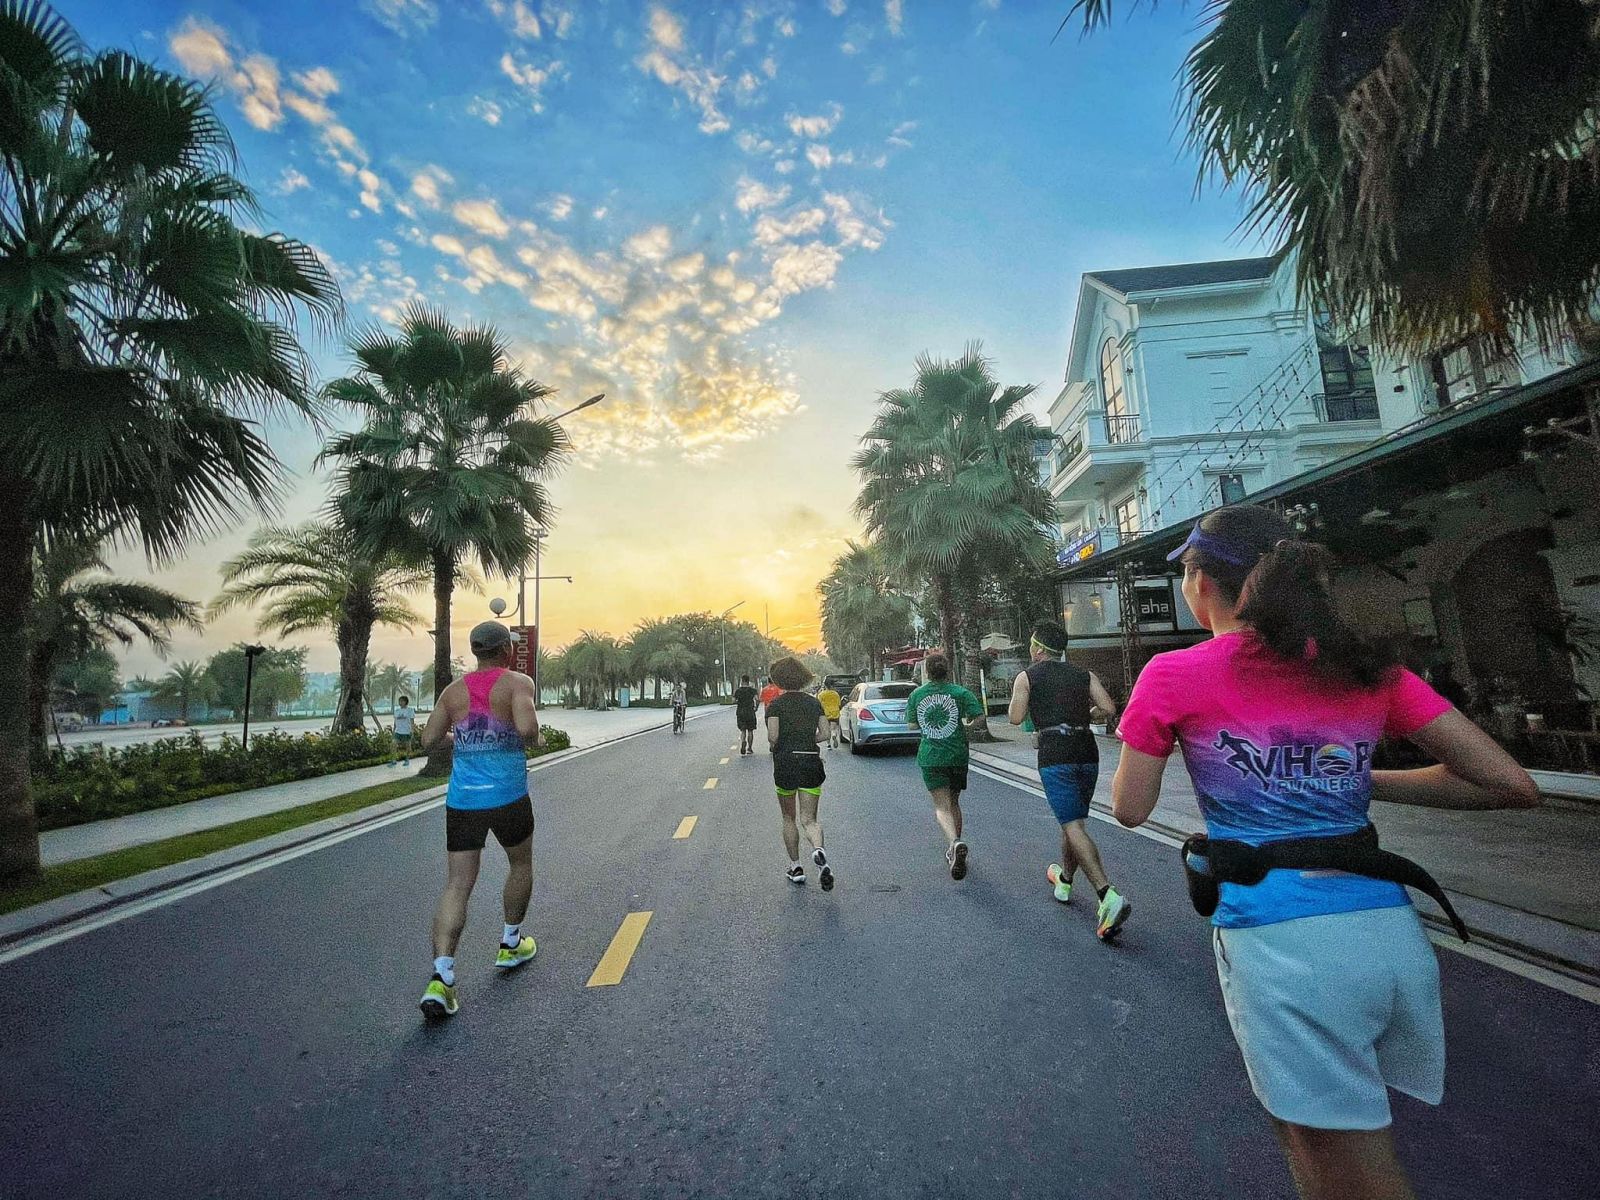 Các thành viên VHOP Runners - cộng đồng yêu chạy bộ tại Ocean City - trong một buổi chạy vào sáng sớm. Ảnh: Hiếu Lê, Nguyen Giap/Group Facebook Vinhomes Ocean Park Runners.